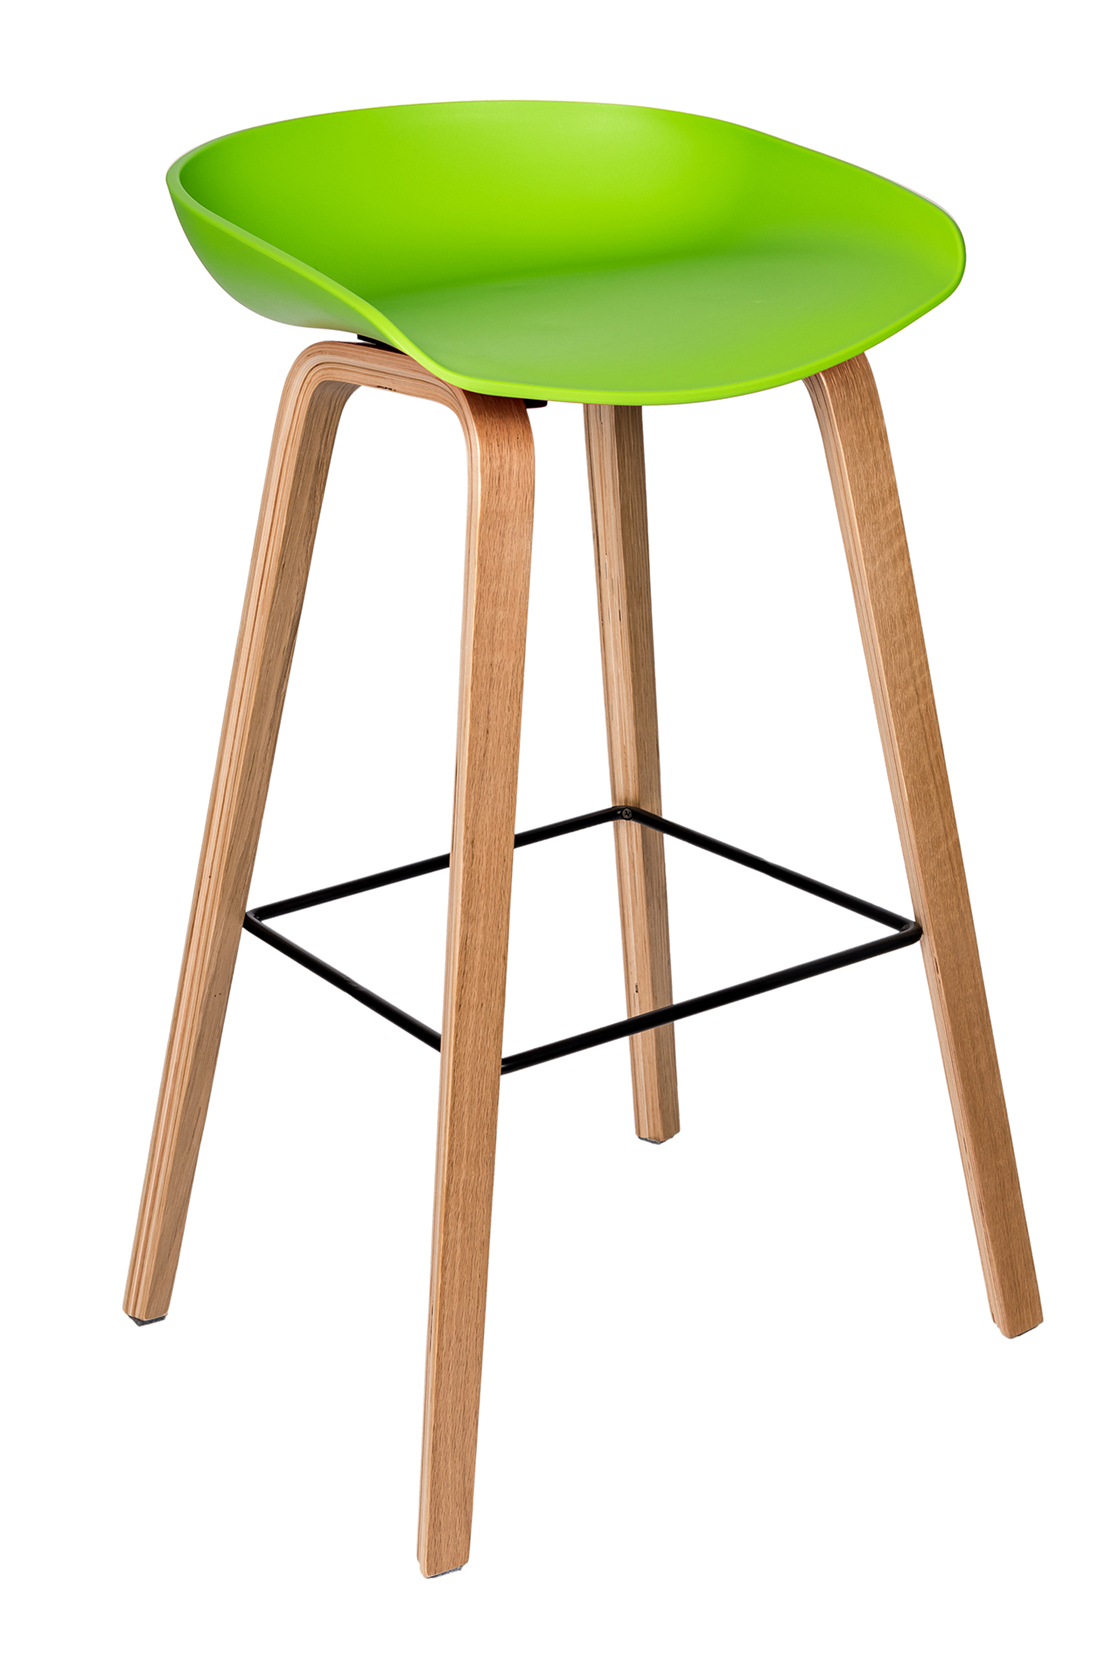 Пластиковый барный стул Либра Зеленый  Курск